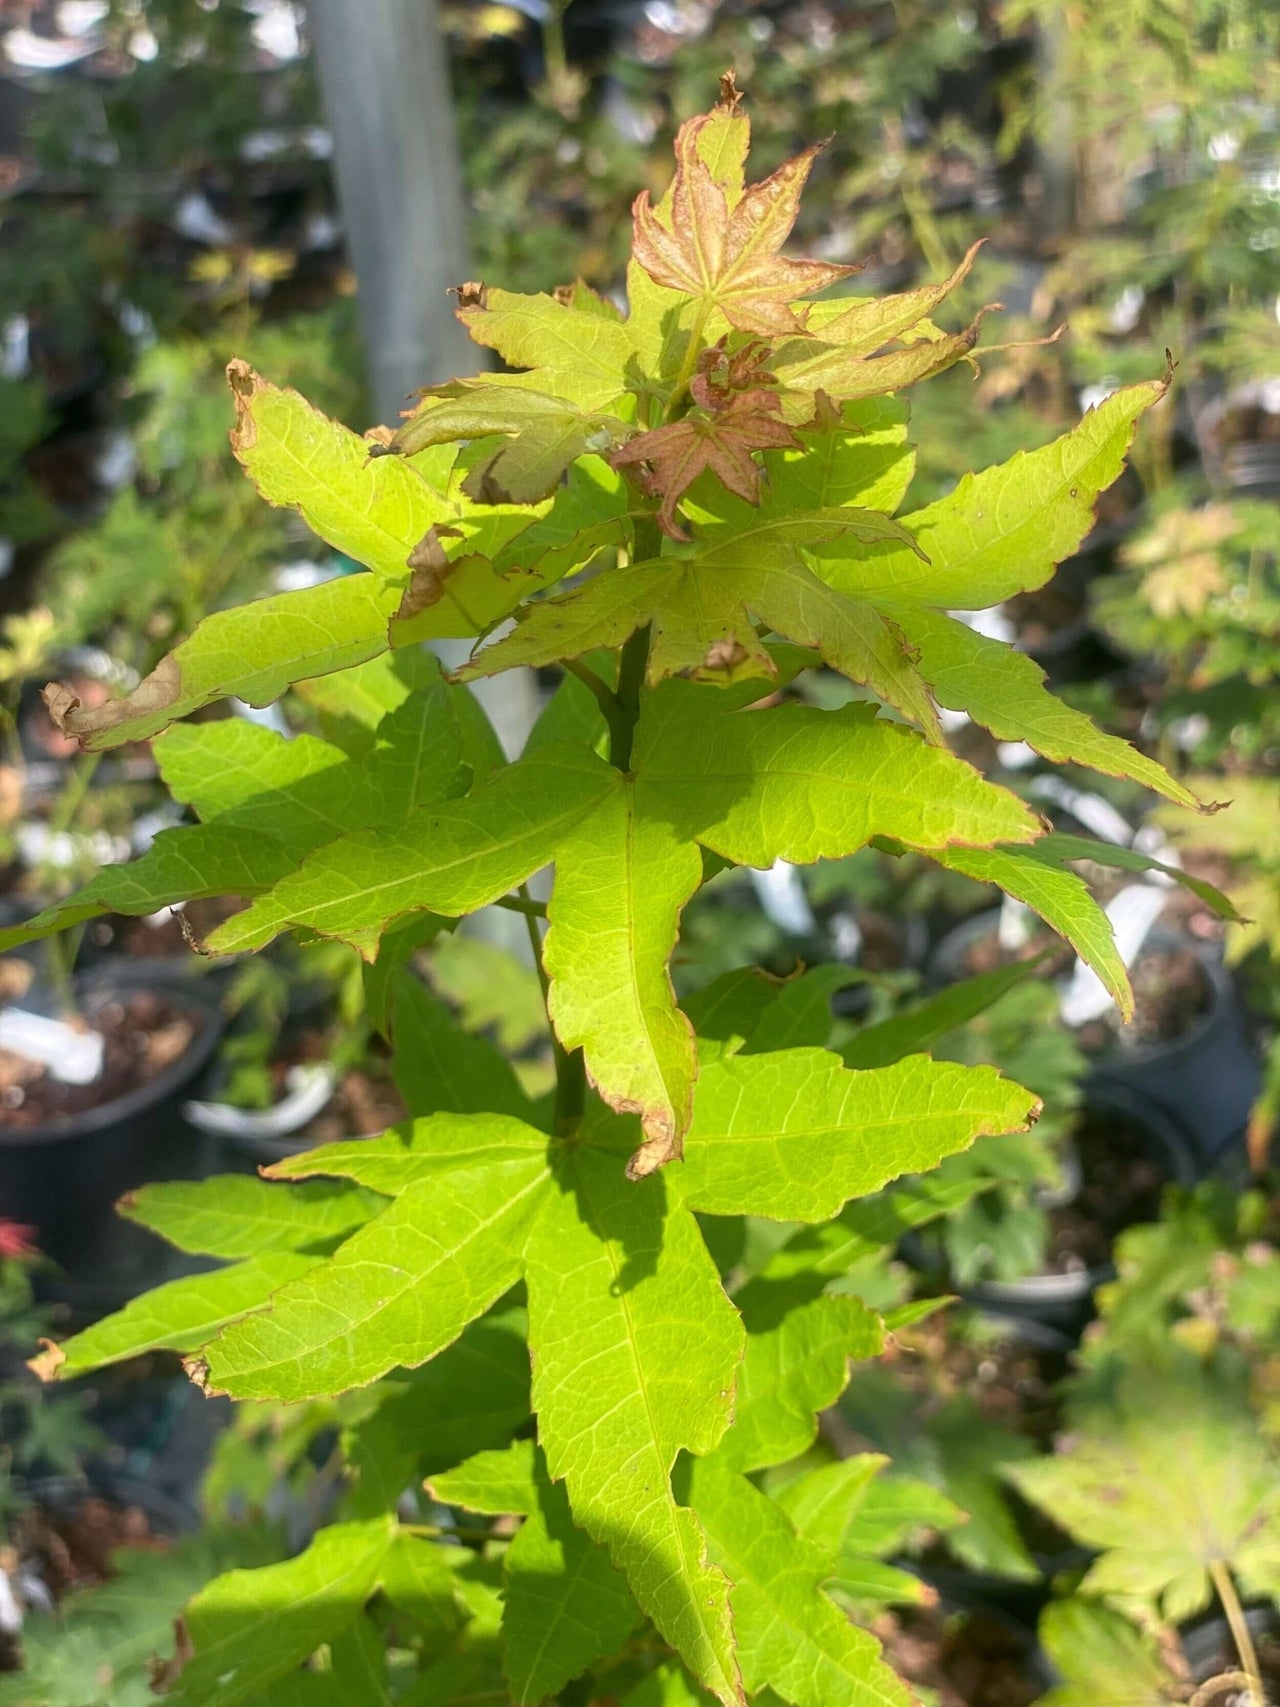 Acer oliverianum 'Hot Blonde' - mapleridgenursery